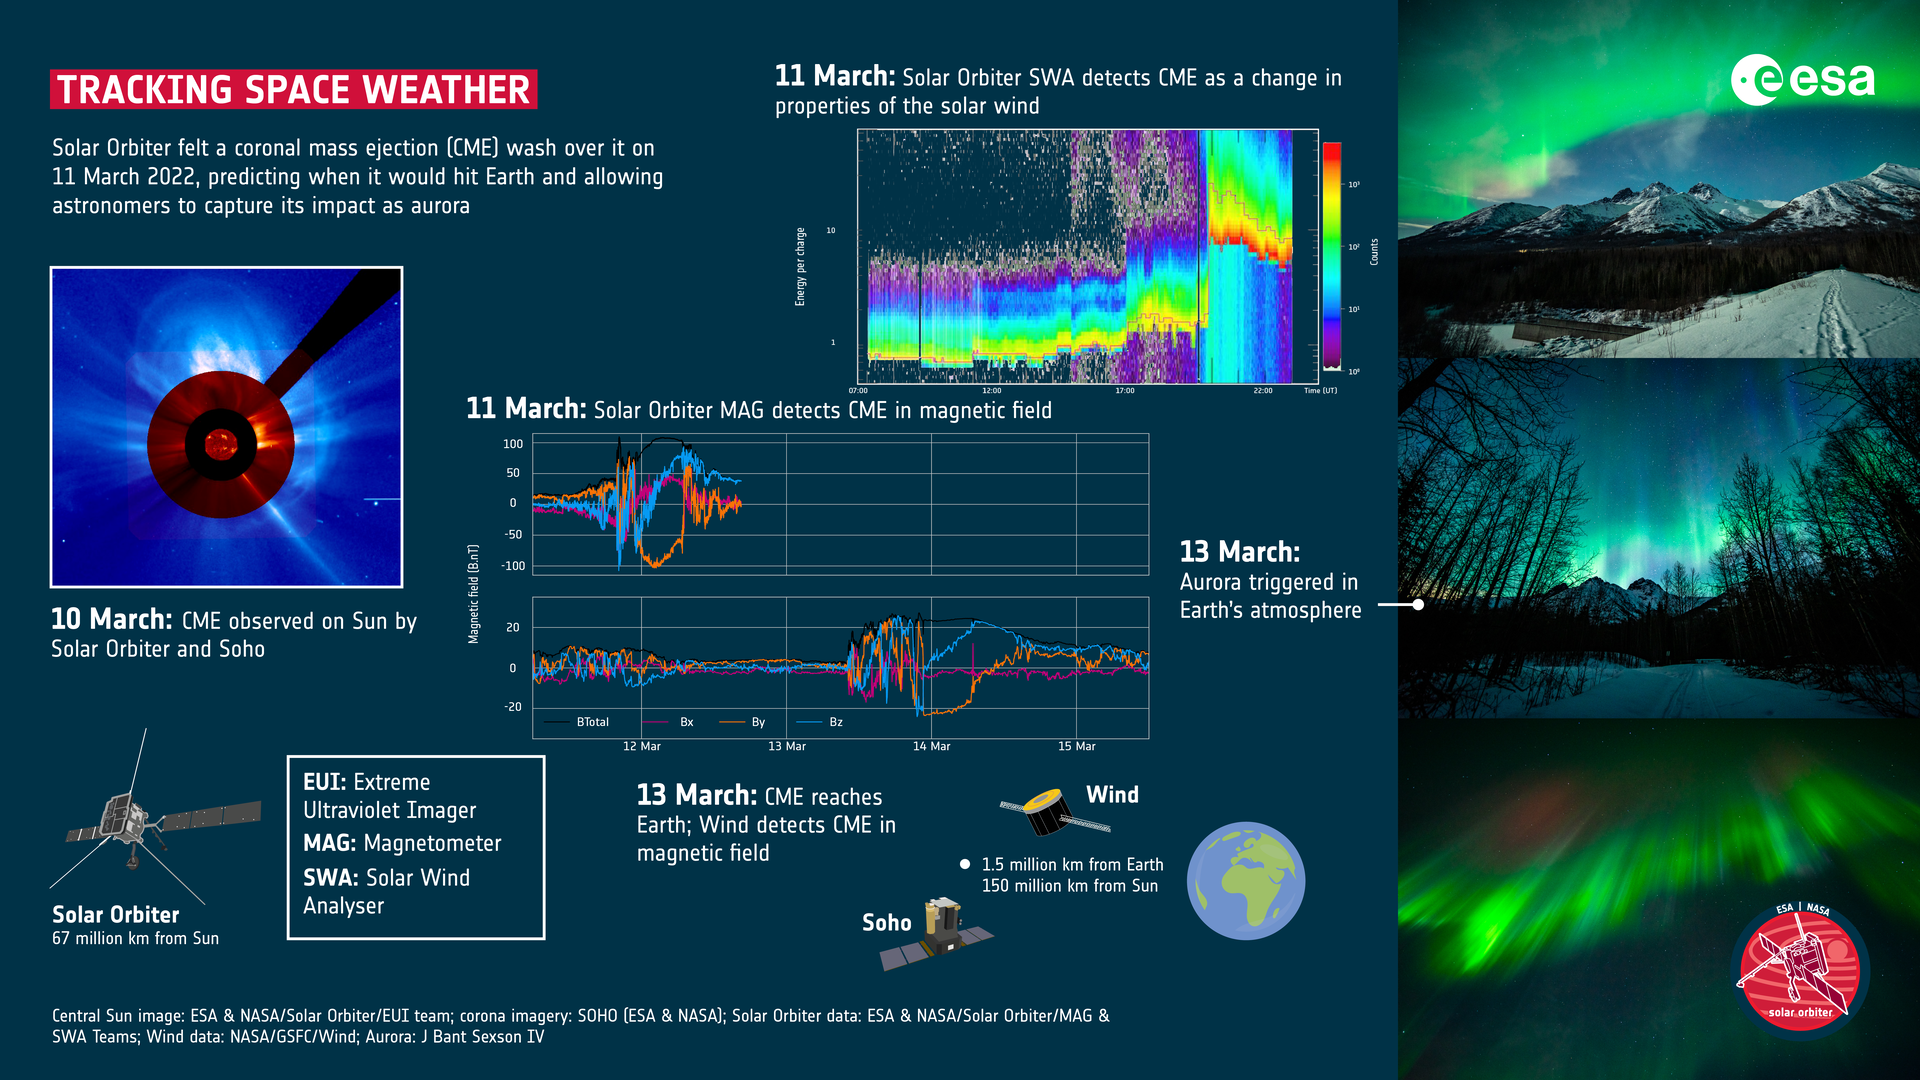 Grafica informativa dell'ESA sul monitoraggio del meteo spaziale. Credits: Central Sun image: ESA & NASA/Solar Orbiter/EUI team; corona imagery: SOHO (ESA & NASA); Solar Orbiter data: ESA & NASA/Solar Orbiter/MAG & SWA Teams; Wind data: NASA/GSFC/Wind Aurora: J Bant Sexson IV